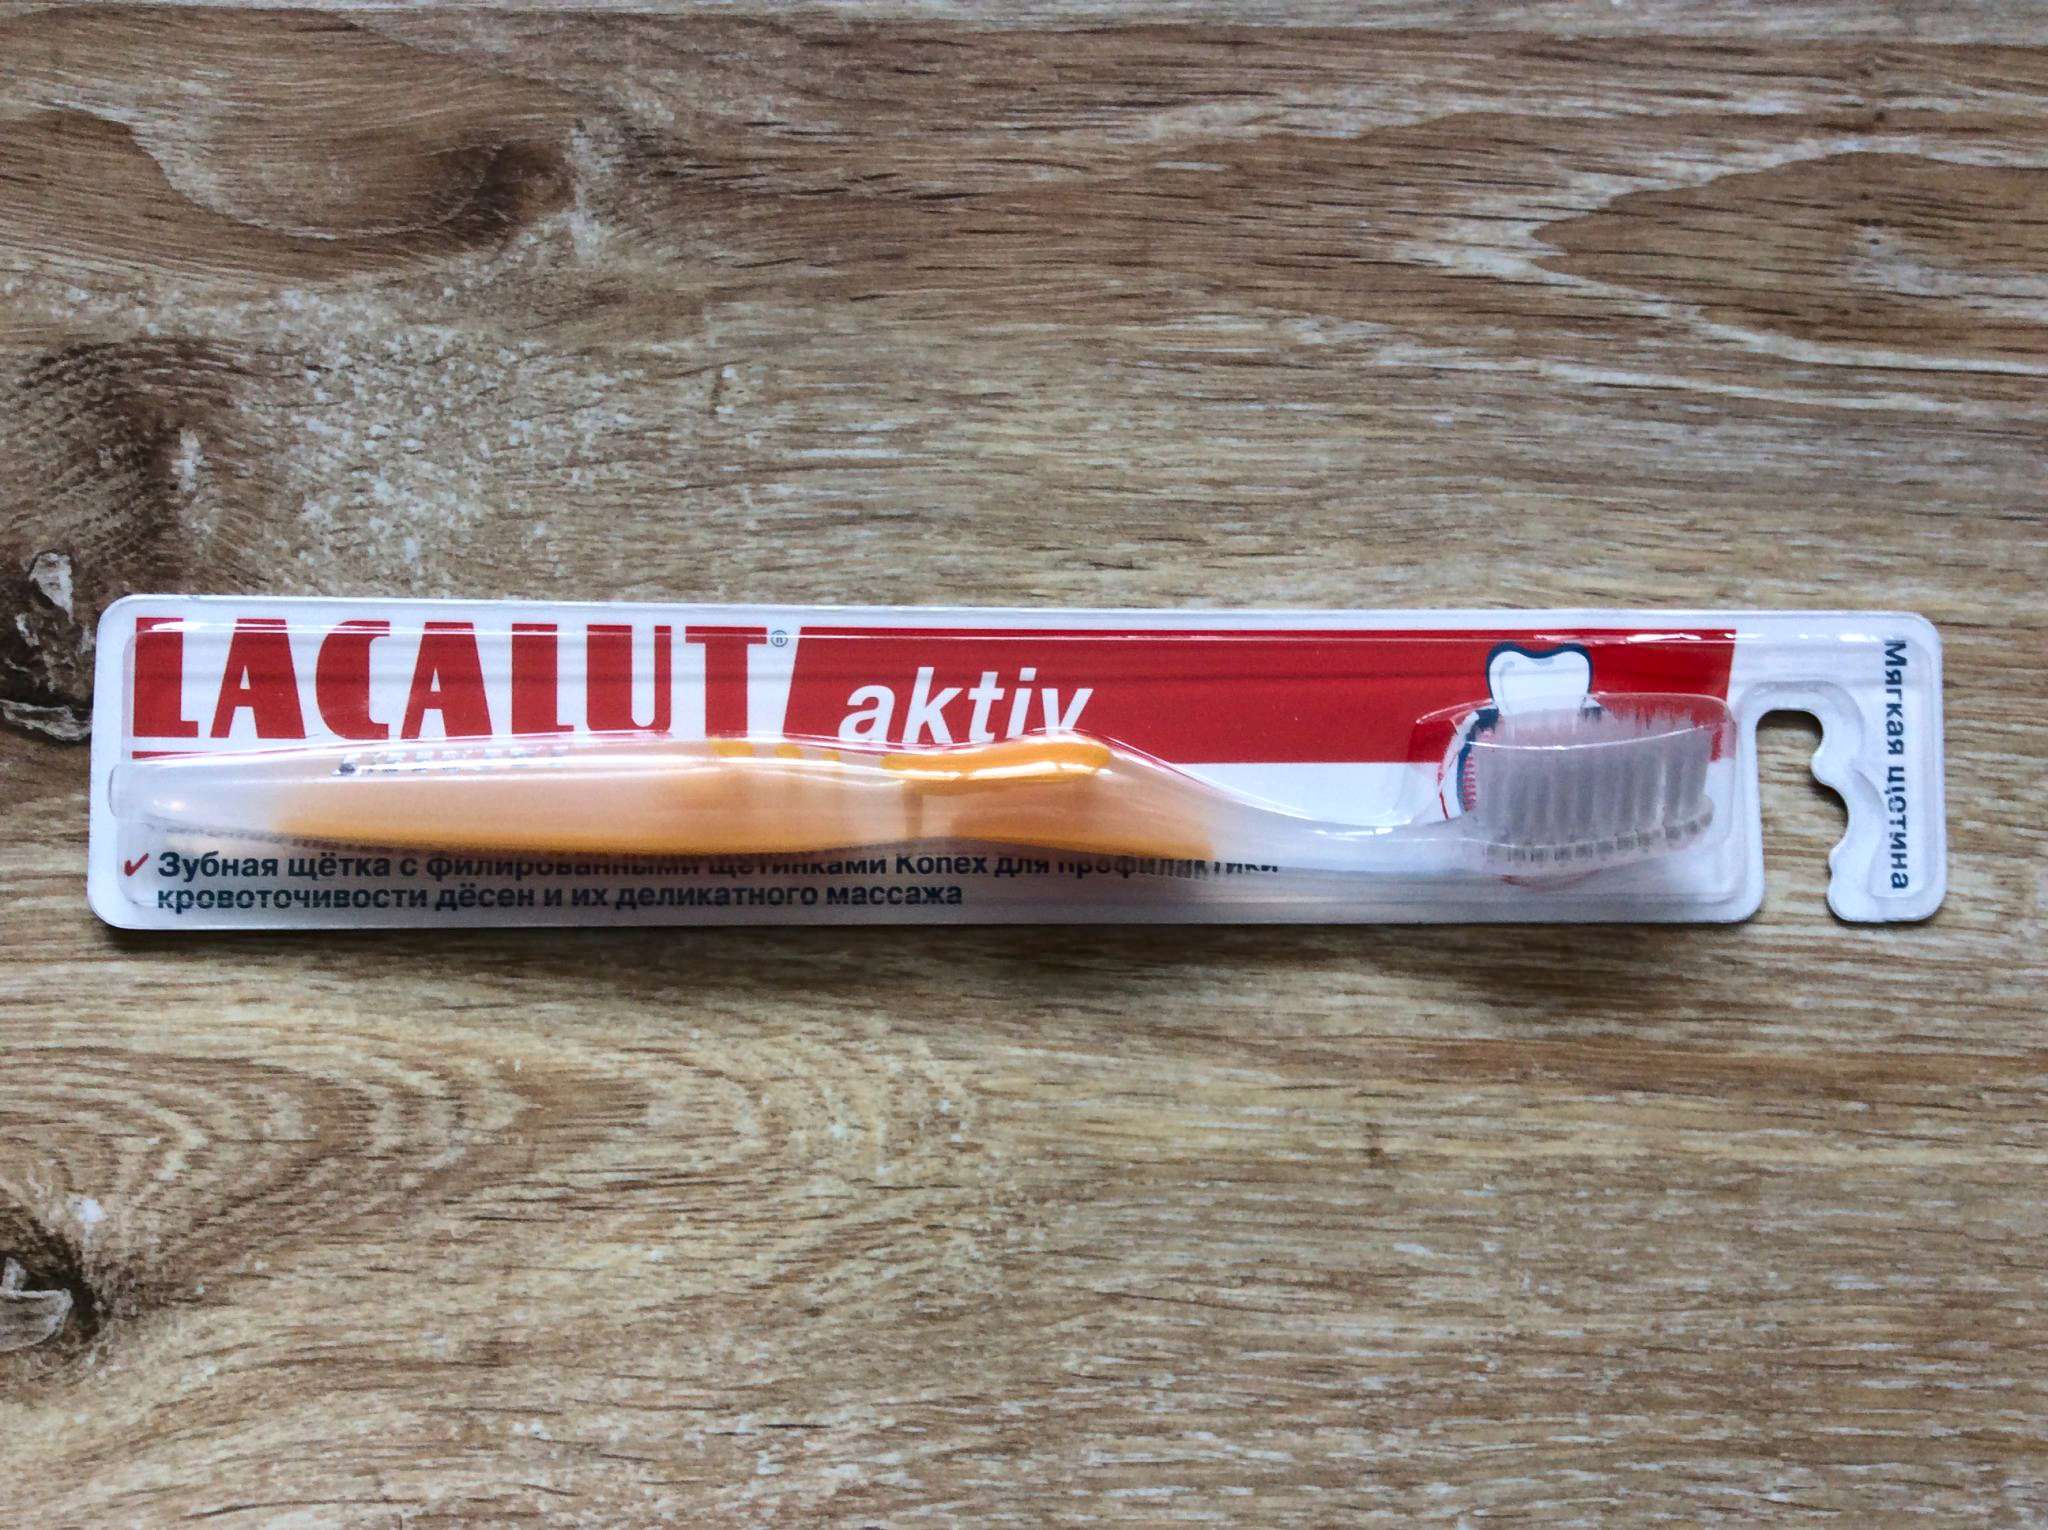 купить зубную щетку lacalut aktiv